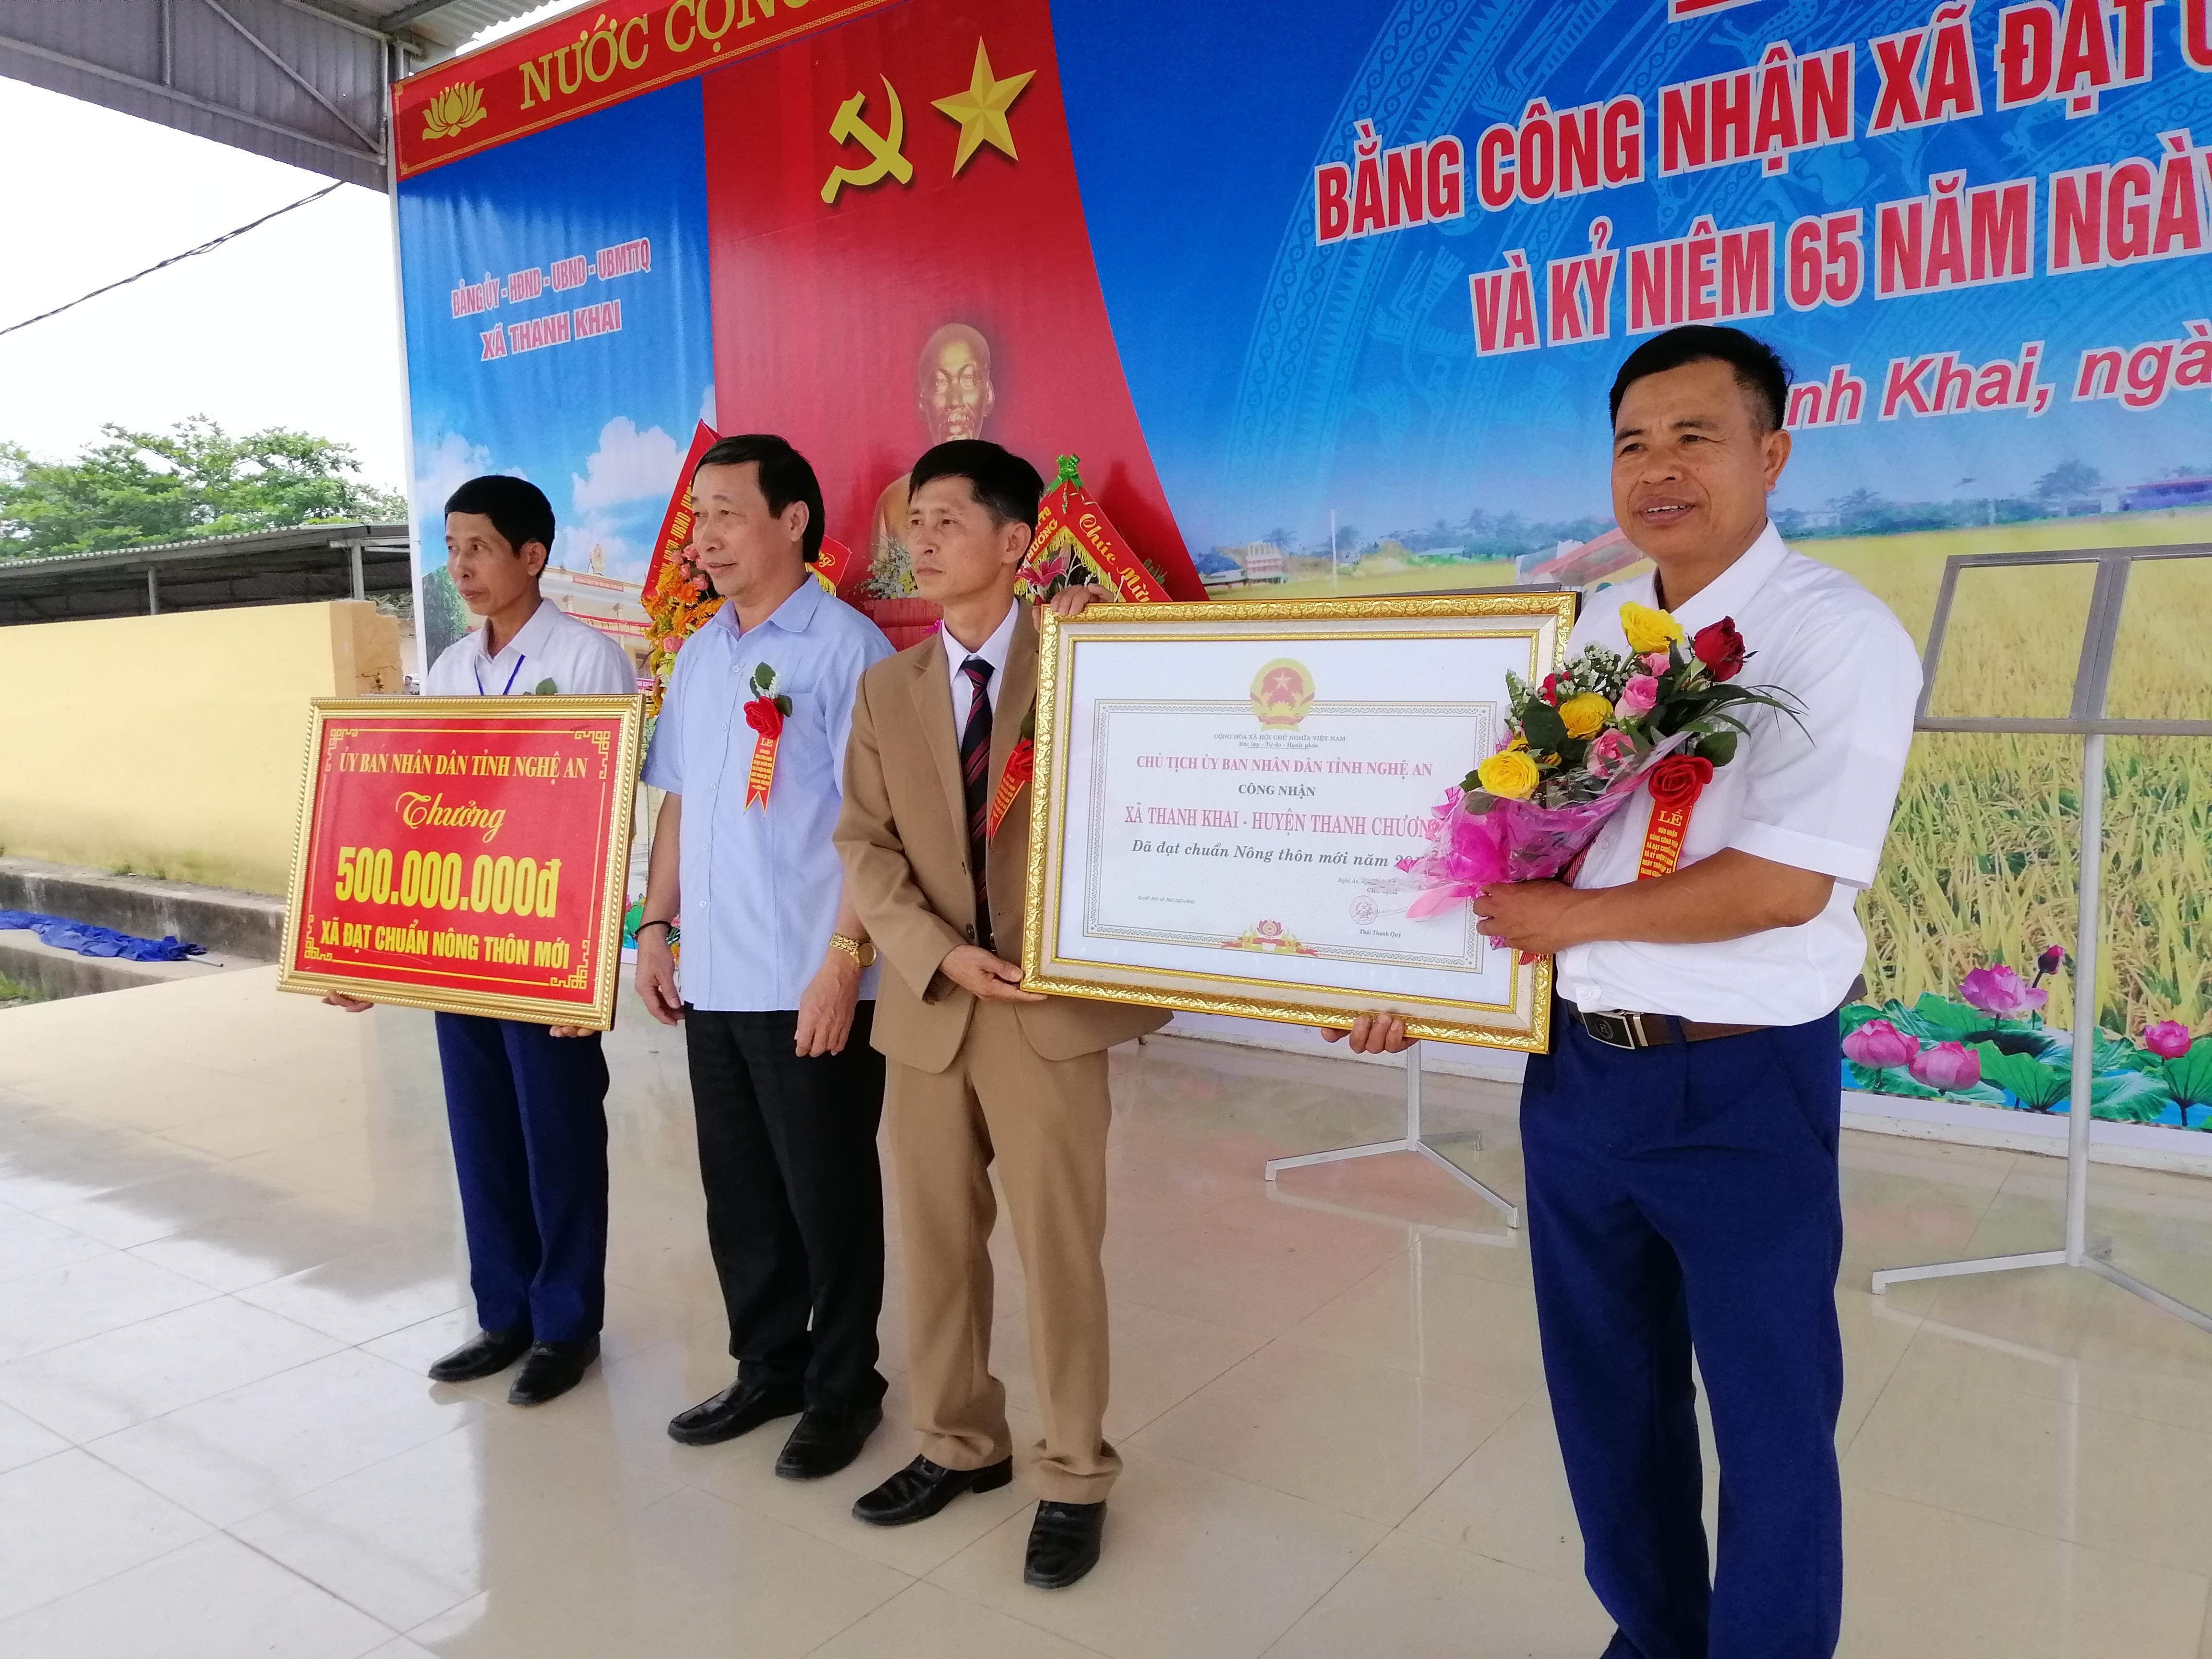 Xã Thanh Khai đón Bằng công nhận xã đạt chuẩn Nông thôn mới